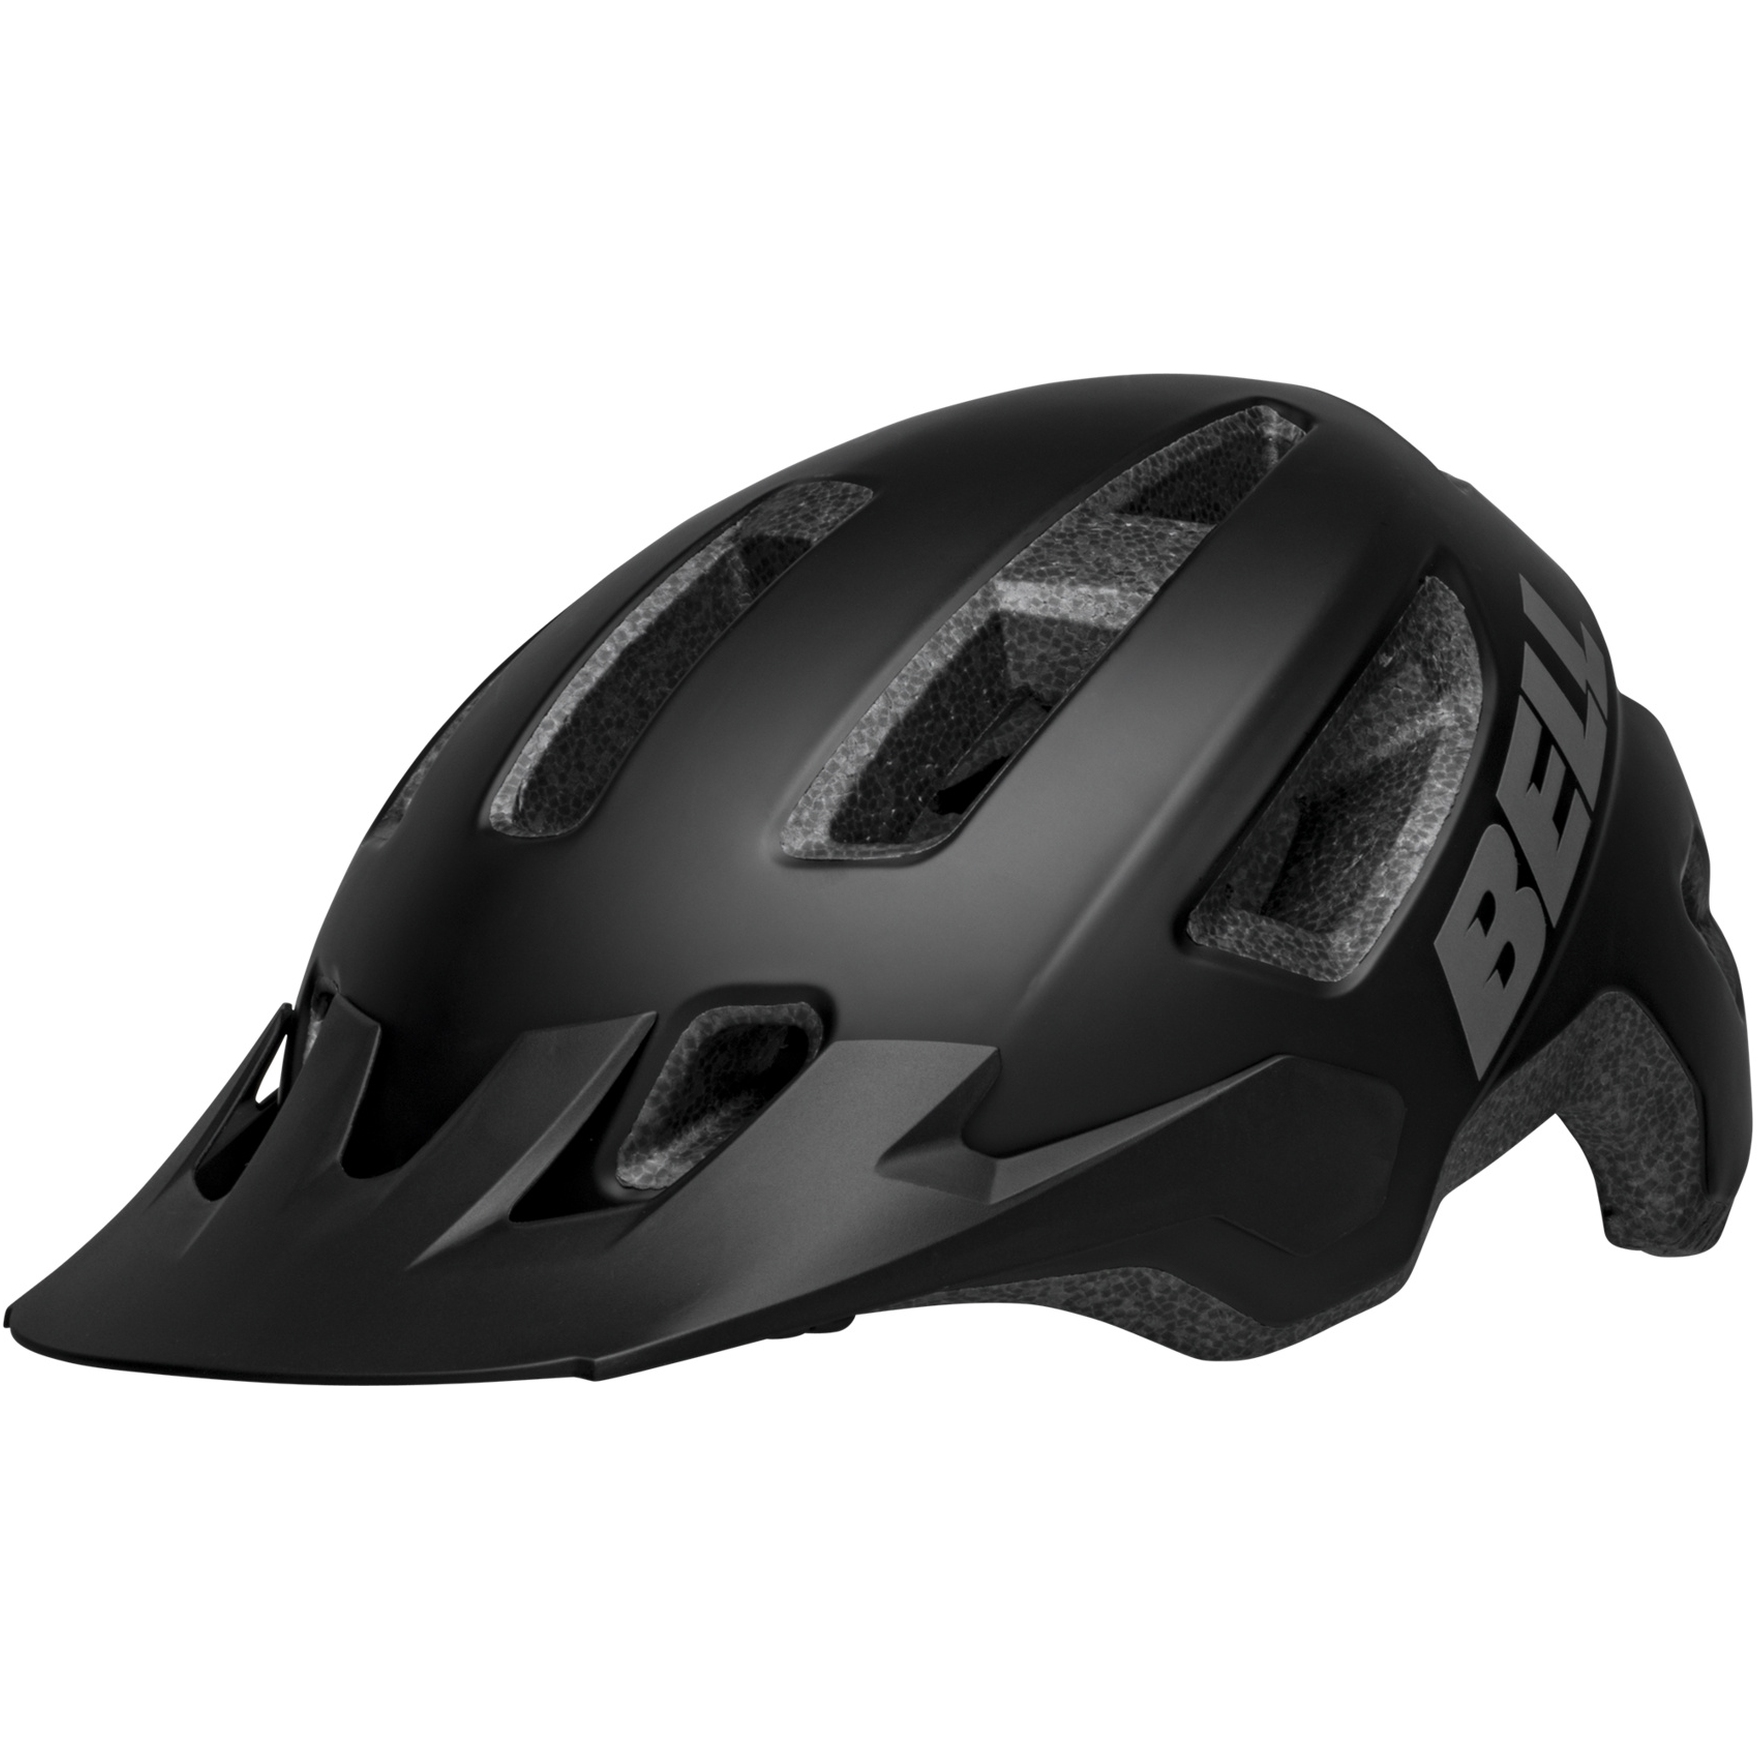 Produktbild von Bell Nomad 2 Helm - matte black